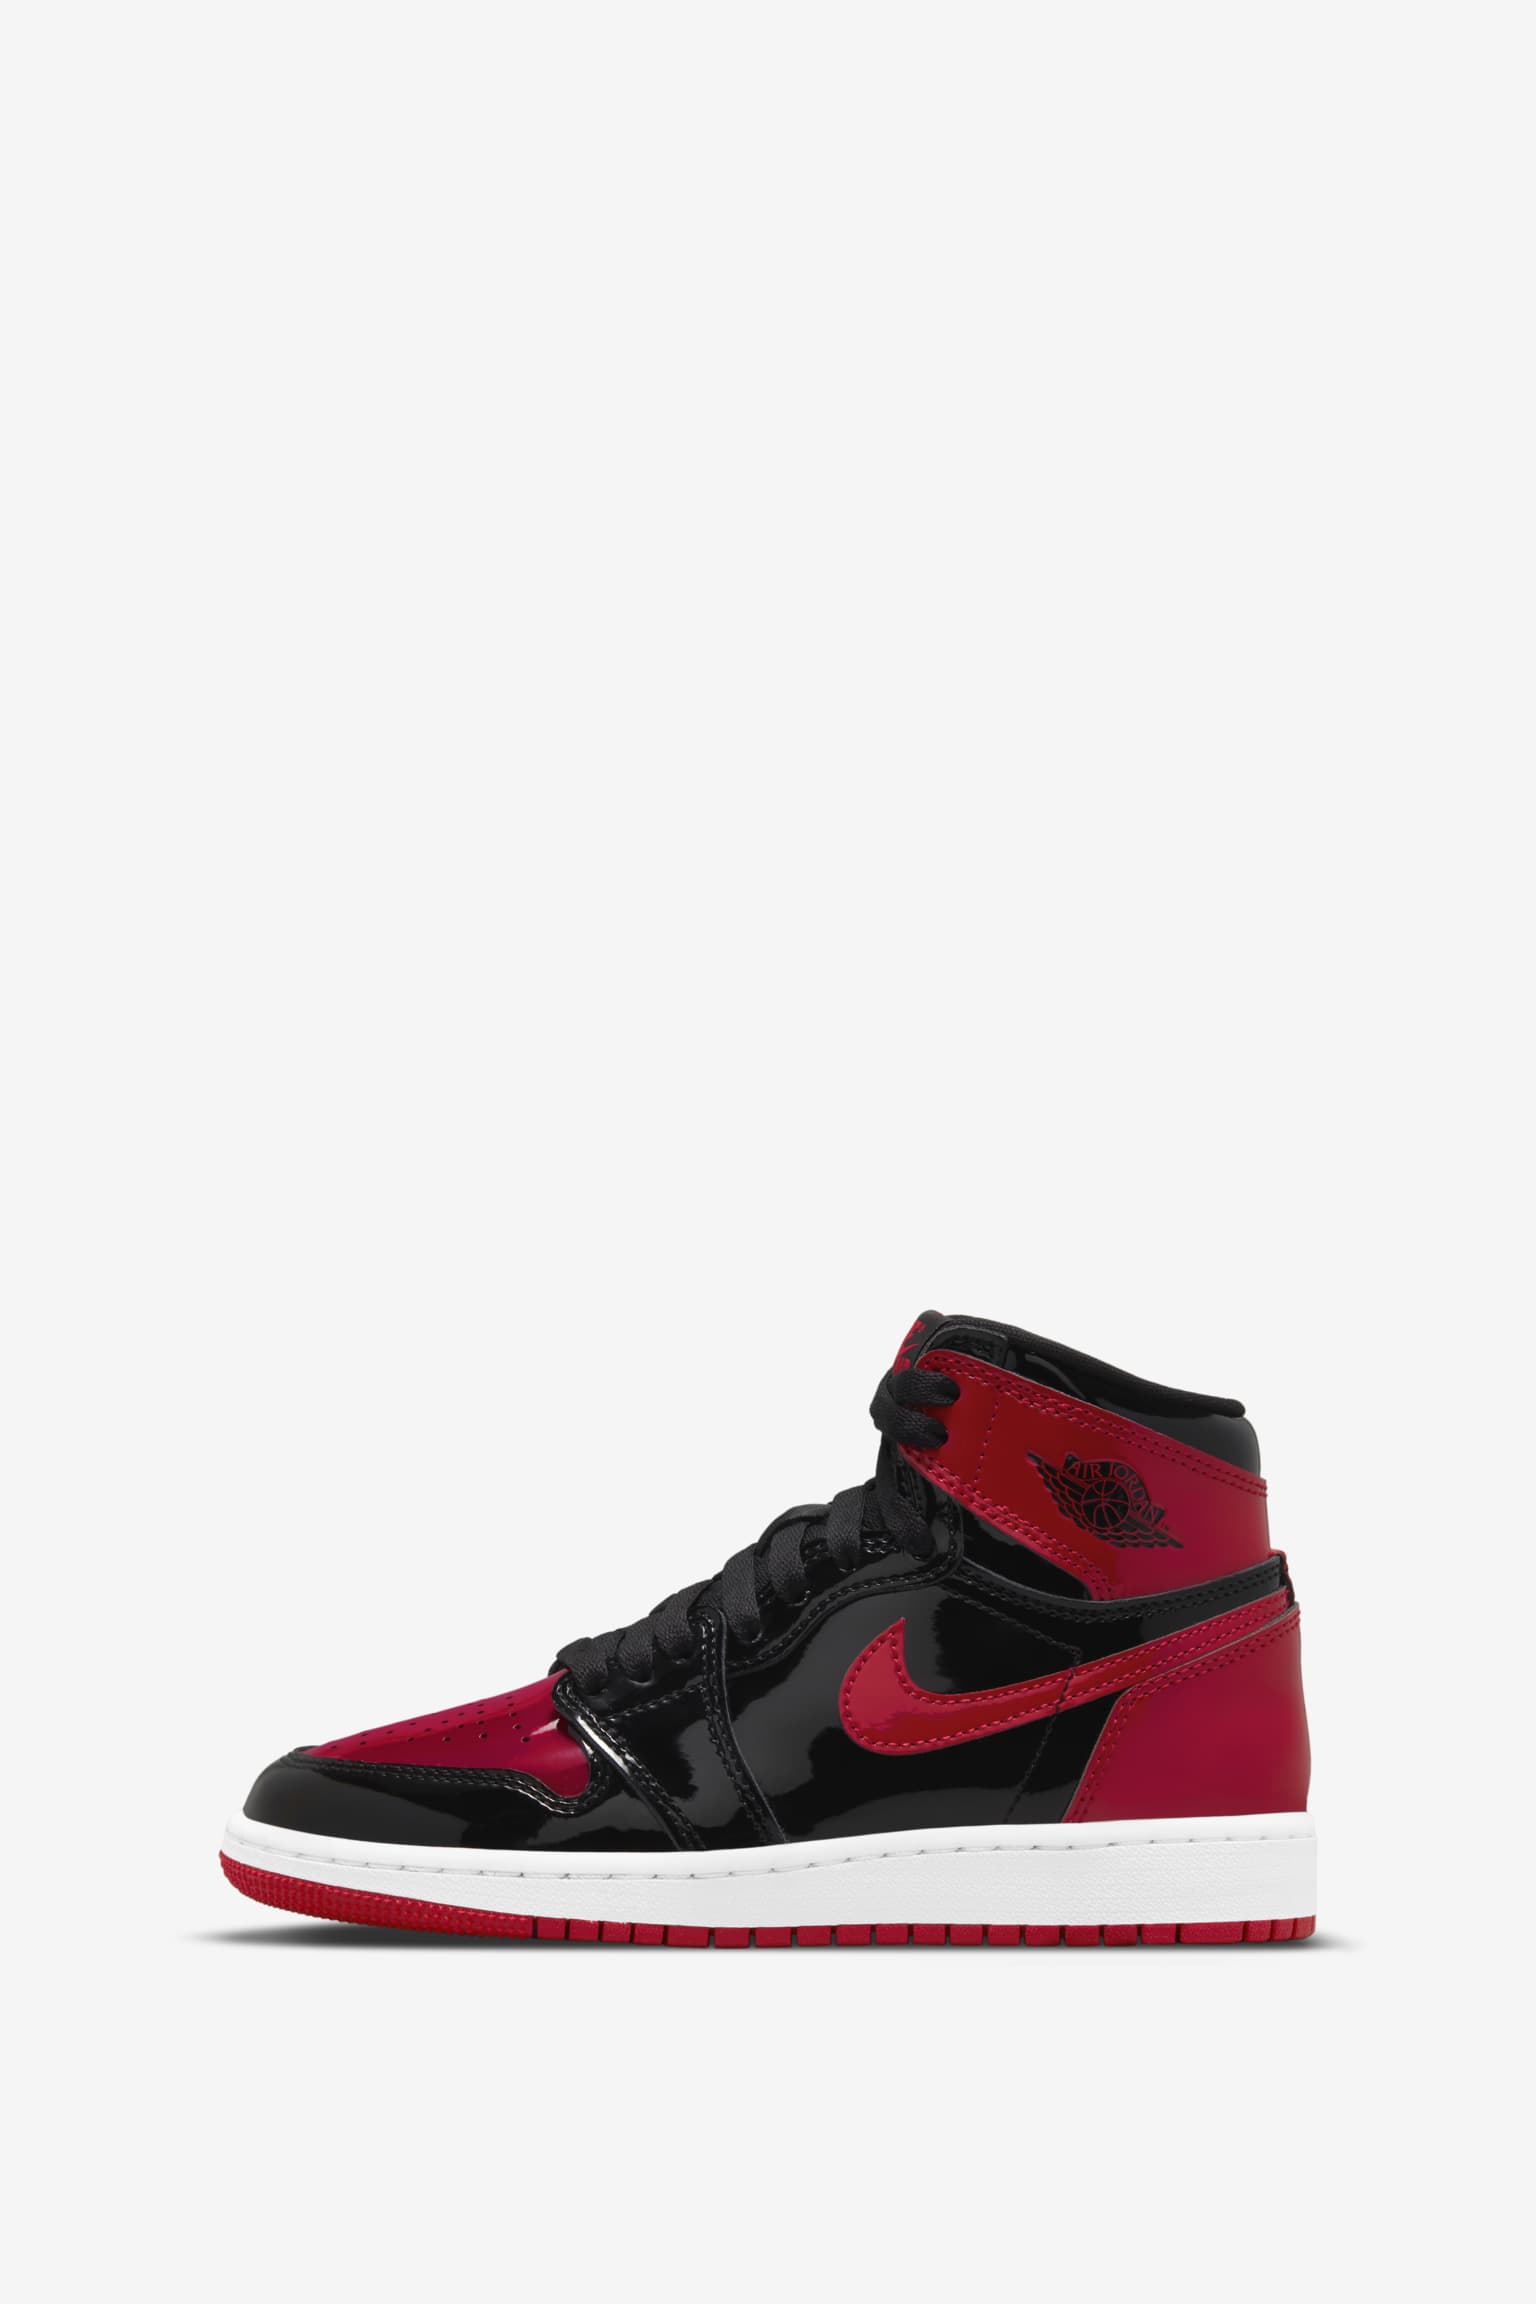 Air Jordan 1 'Patent Bred' (555088-063) Release Date. Nike